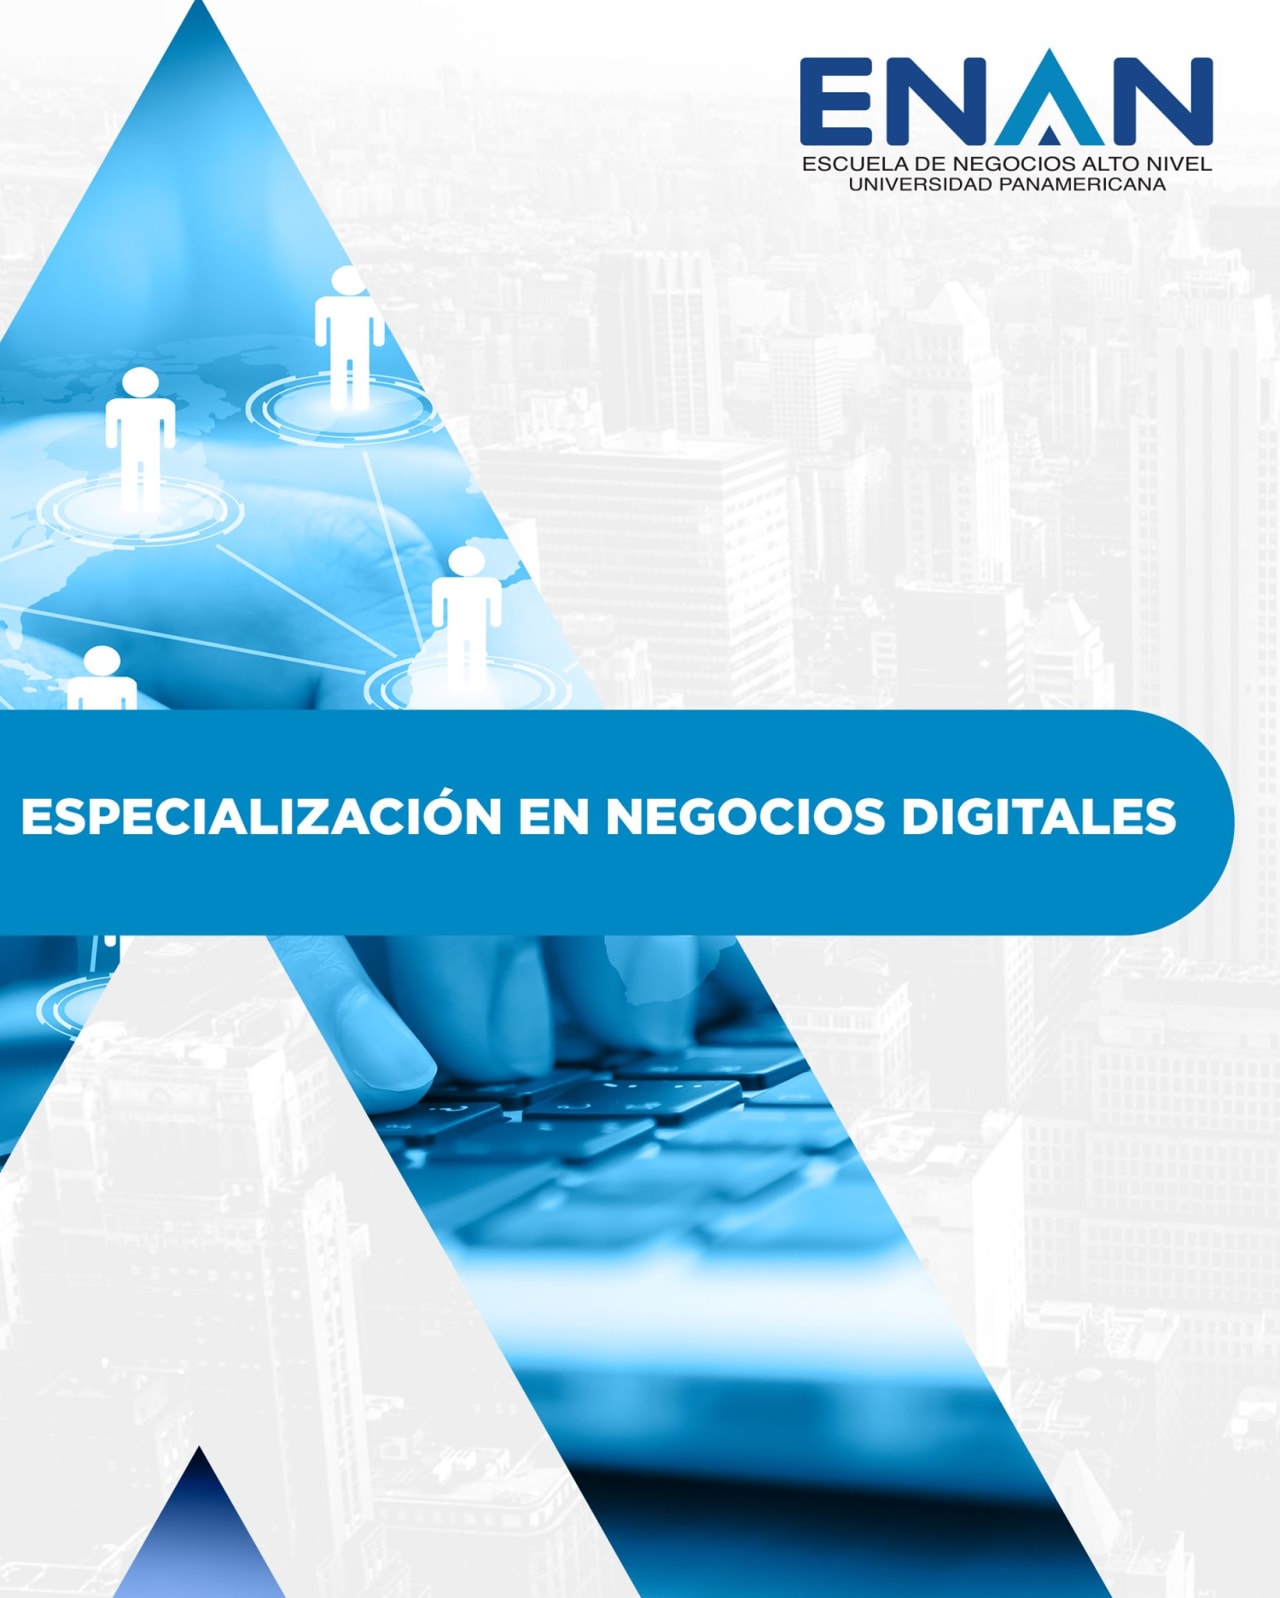 Escuela de Negocios Alto Nivel - Universidad Panamericana de Guatemala התמחות עסקית דיגיטלית